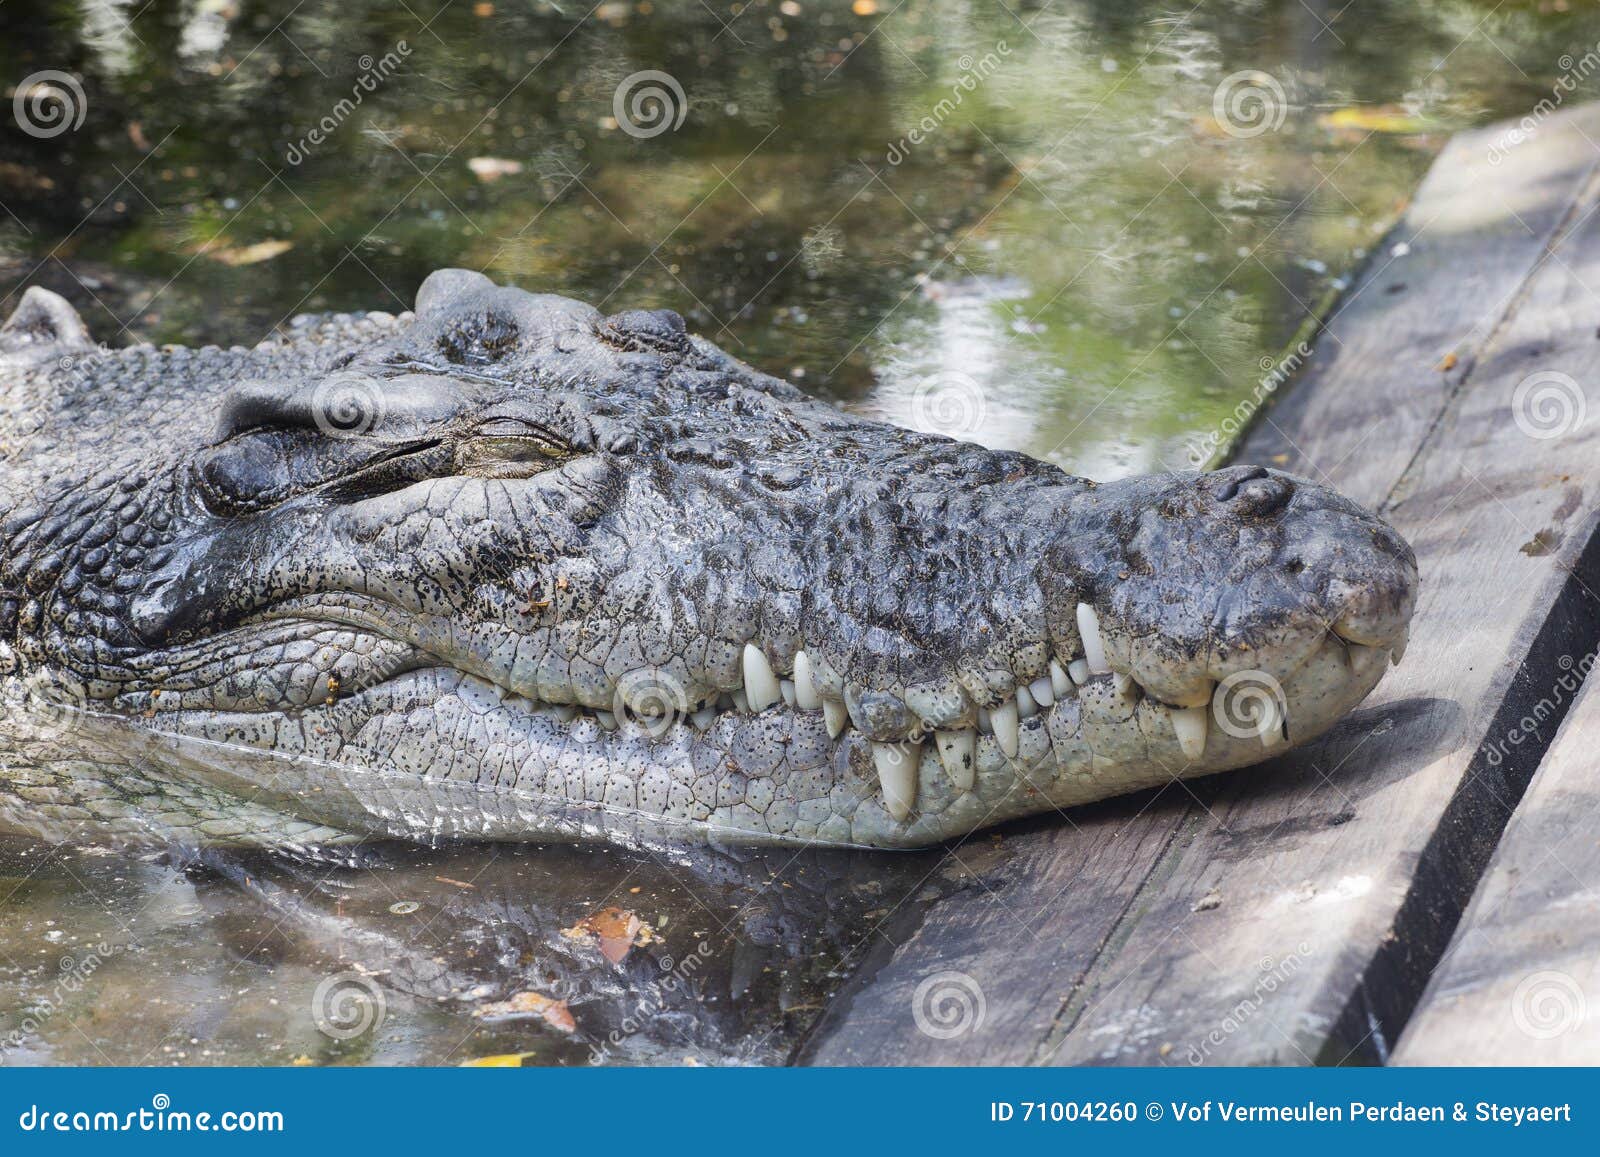 Крокодилы в соленой воде. Крокодил лежит на воде. Солоноватый крокодил. Крокодил отдыхает на берегу.